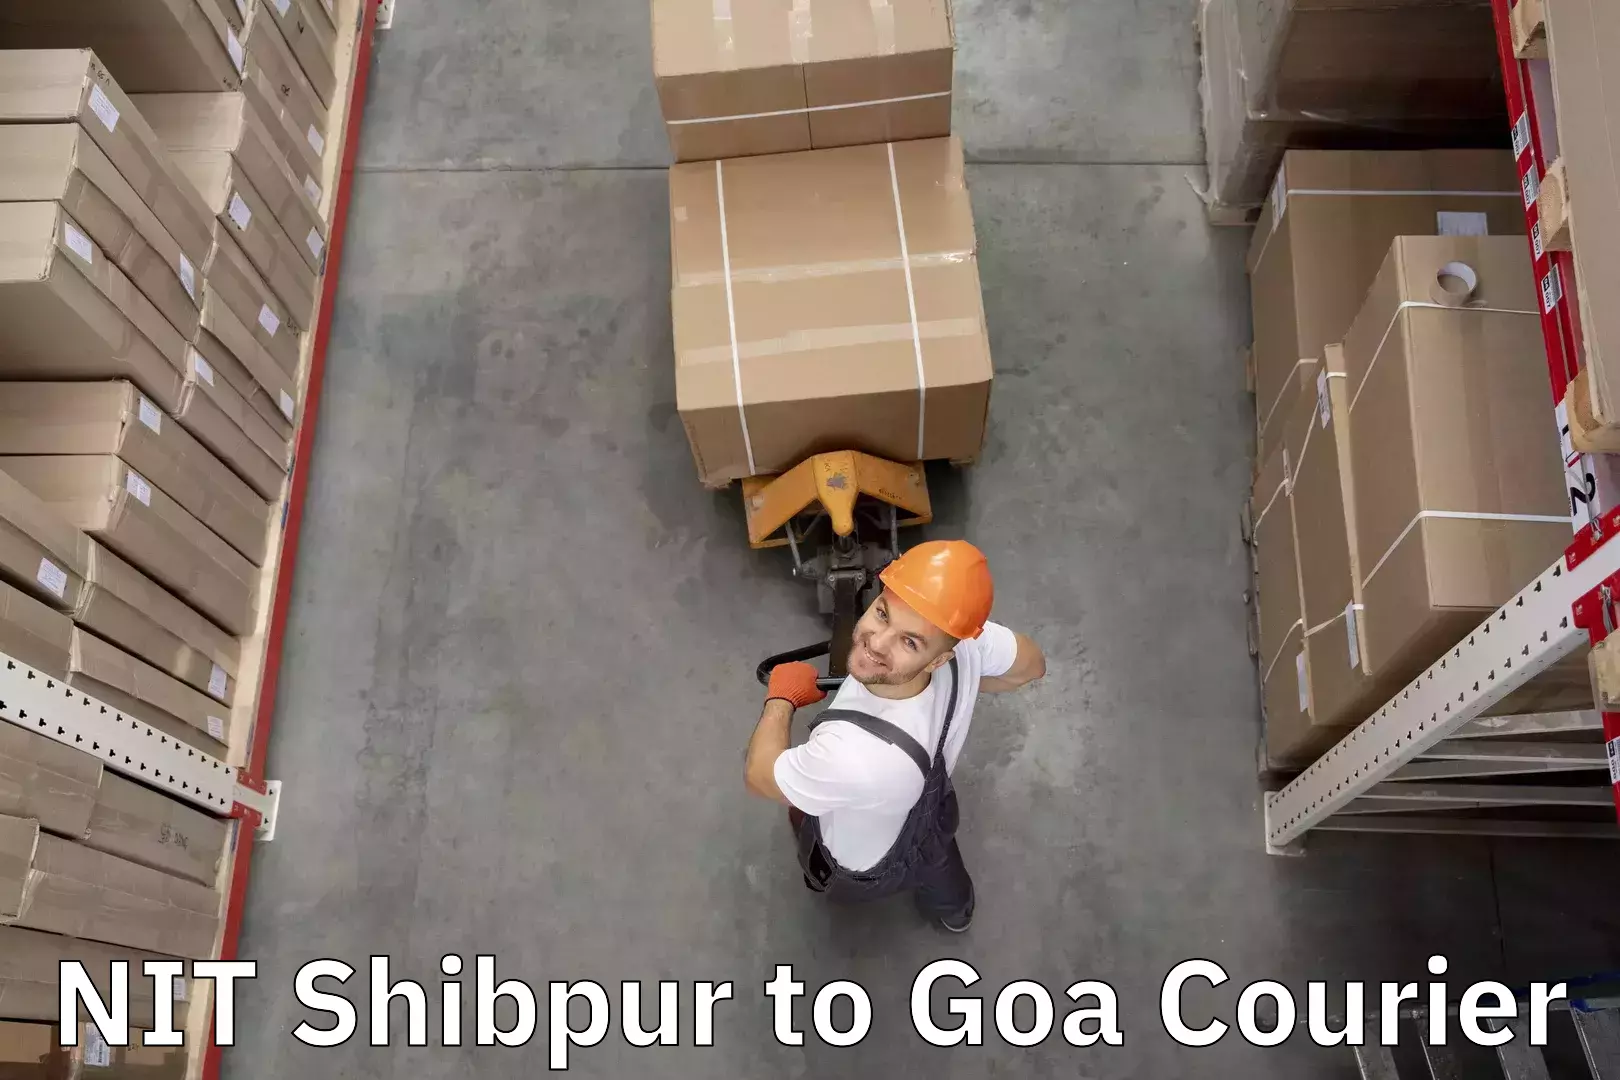 Luggage transport company NIT Shibpur to Goa University